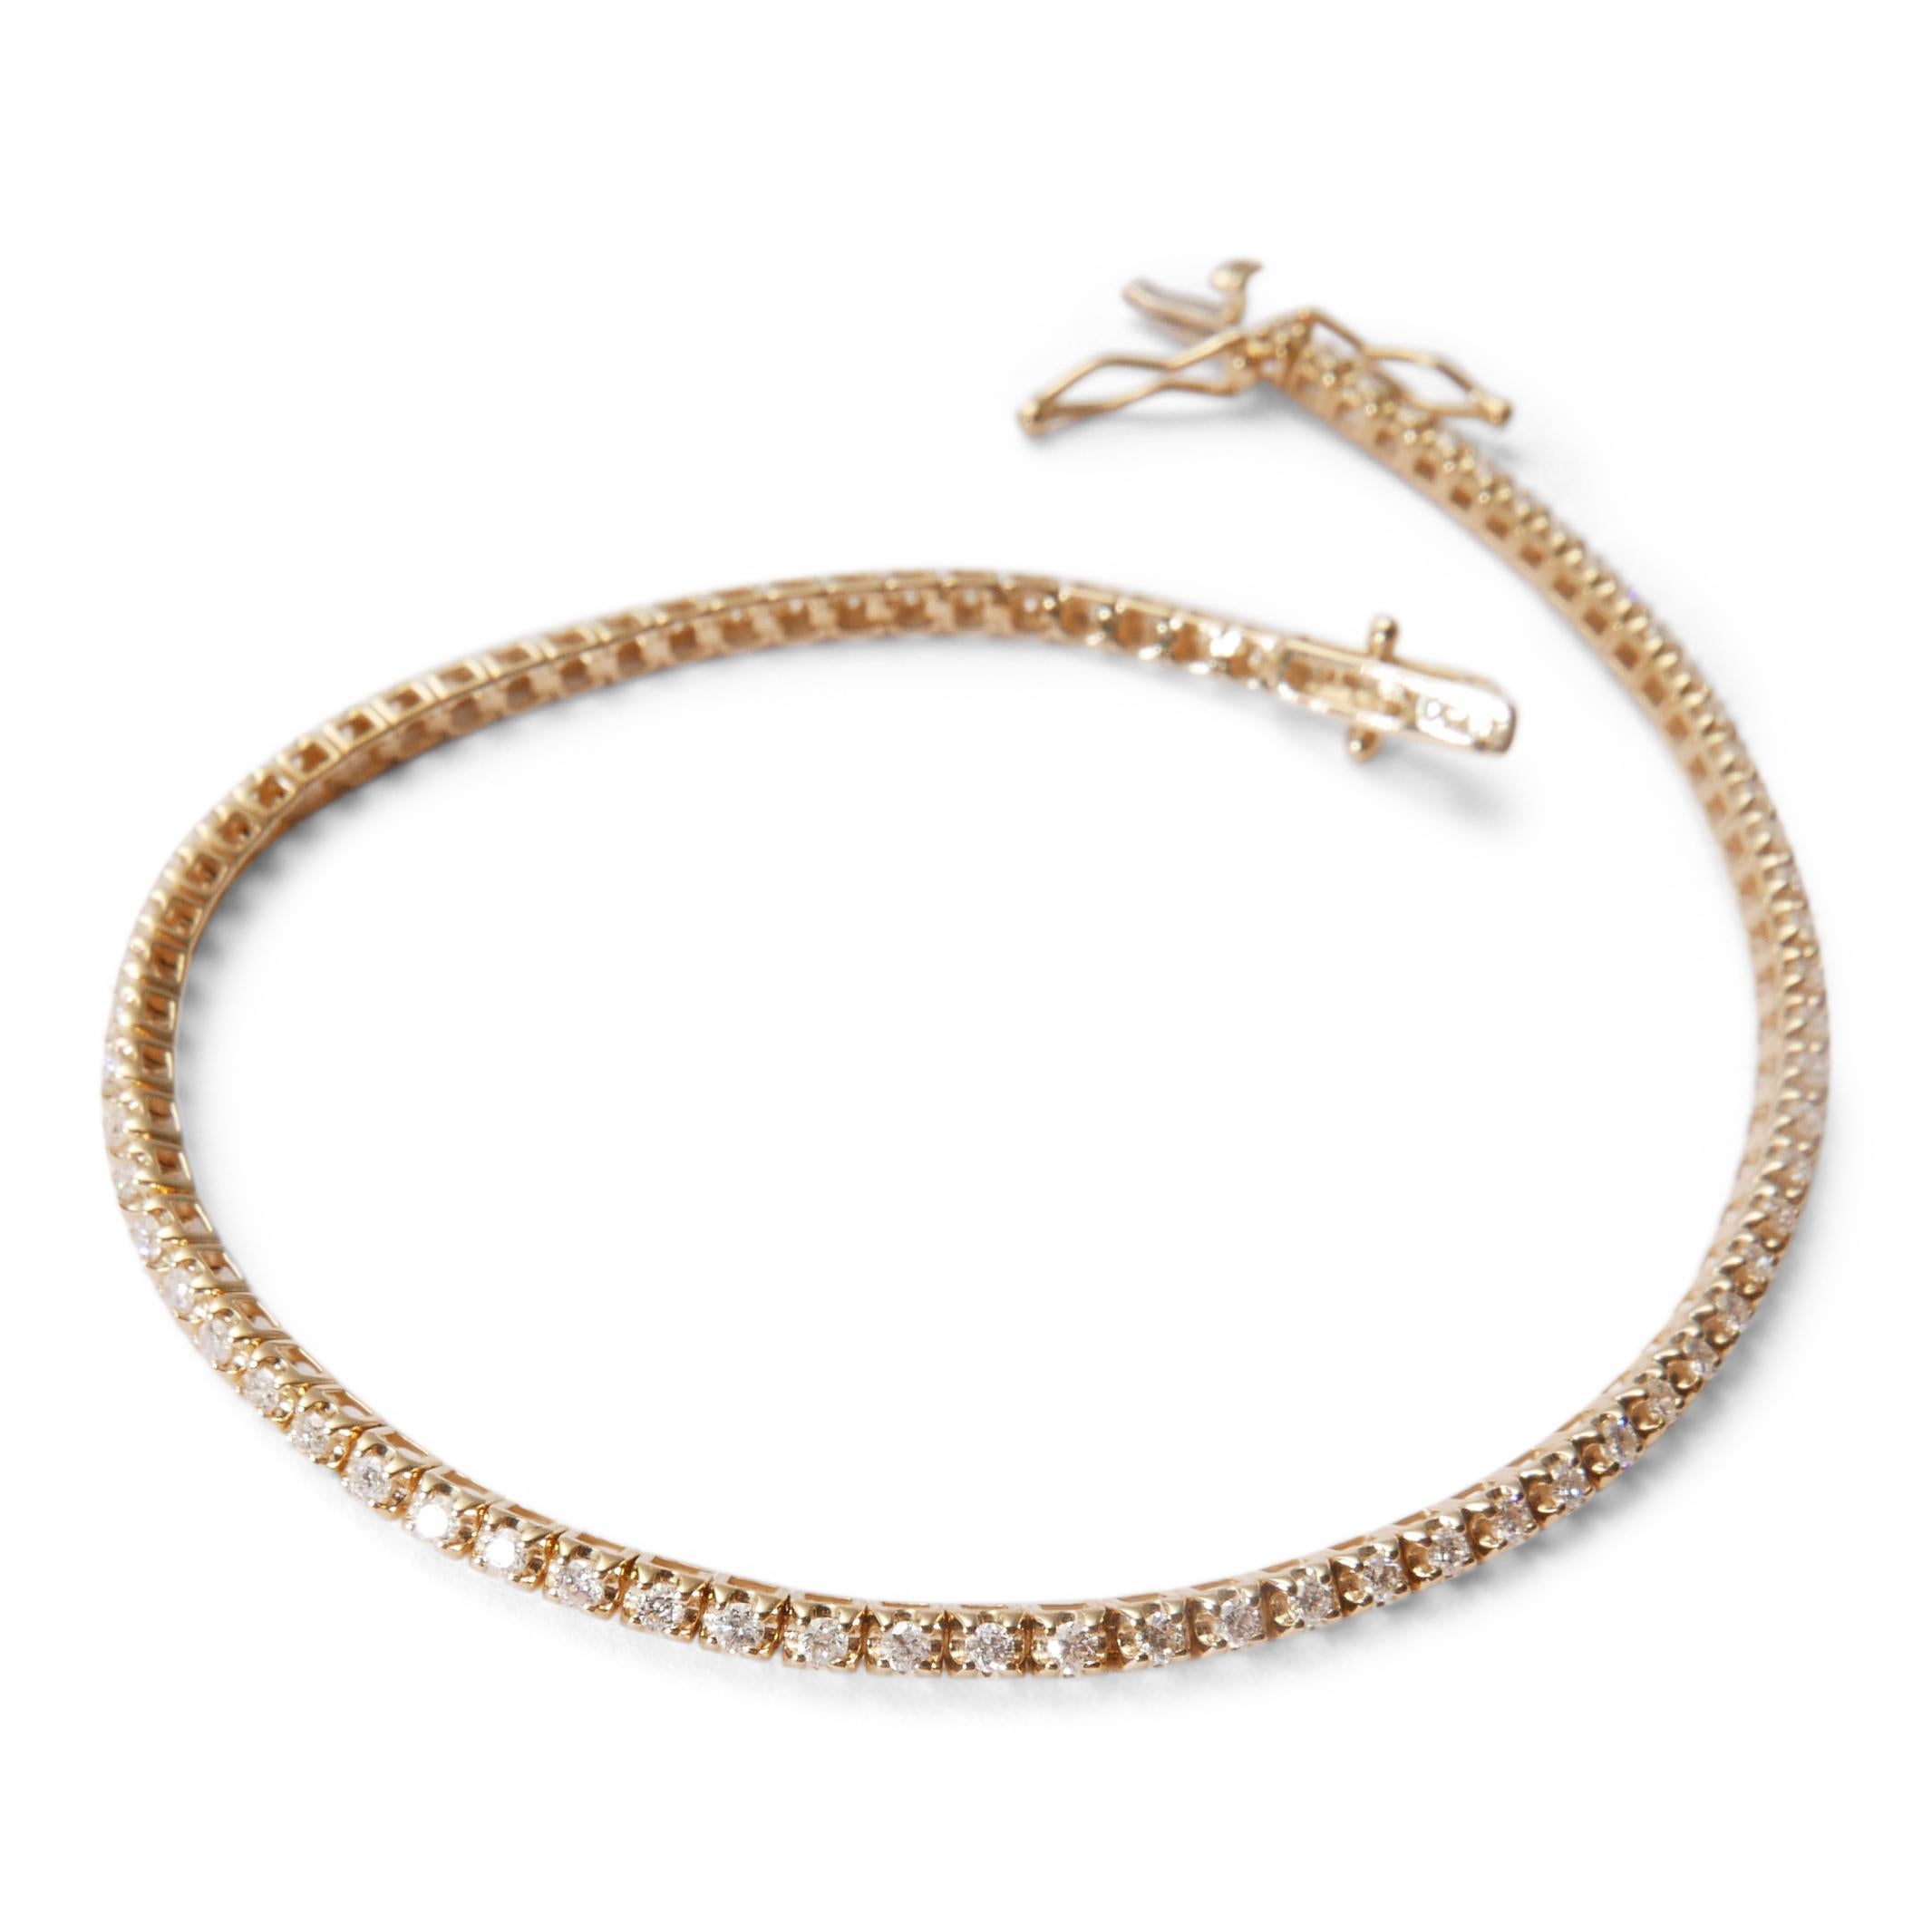 Women's or Men's Diamond Tennis Bracelet in 18 Karat Yellow Gold by Allison Bryan For Sale